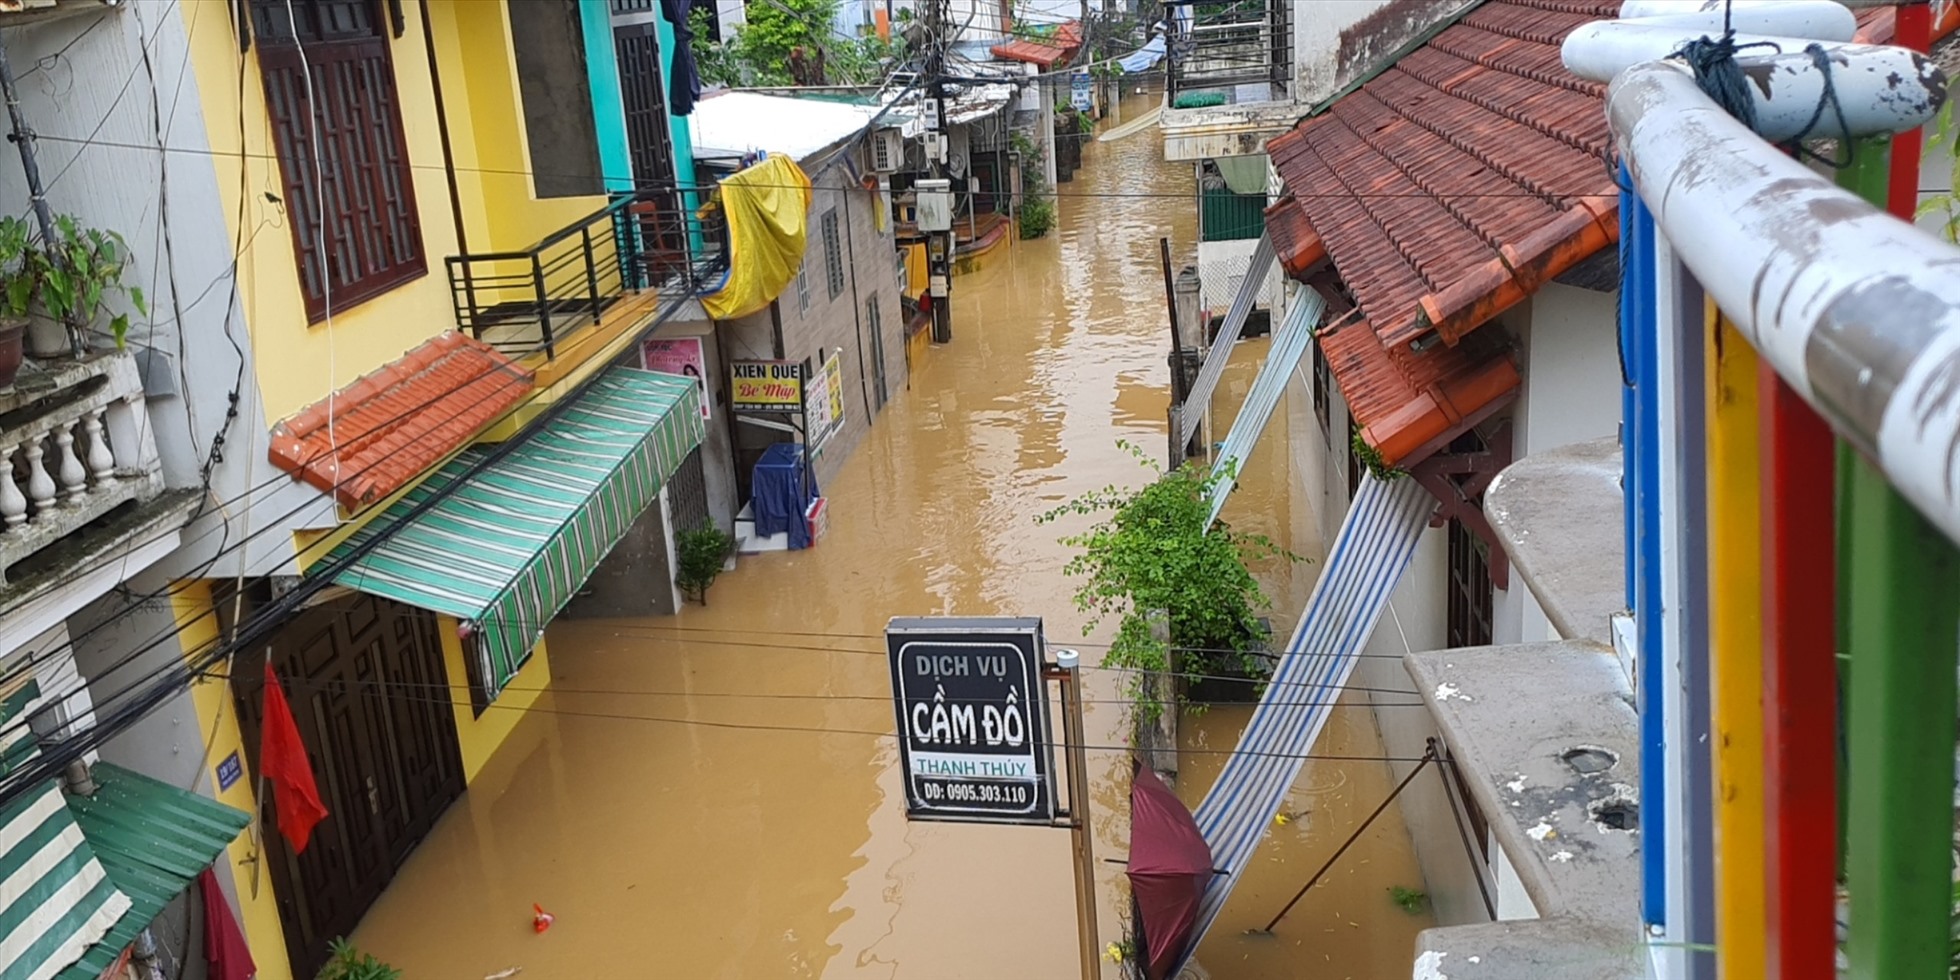 Tại thành phố Huế, do mưa cường suất lớn nên hầu hết các tuyến đường trên địa bàn bị ngập úng cục bộ với mức ngập 0,3-0,4m, đã ảnh hưởng đến sinh hoạt của người dân. Ngoài ra, tại một số địa phương thuộc các huyện, thị trên địa bàn tỉnh Thừa Thiên Huế cũng xảy ra ngập lụt, đường giao thông một số nơi bị chia cắt.